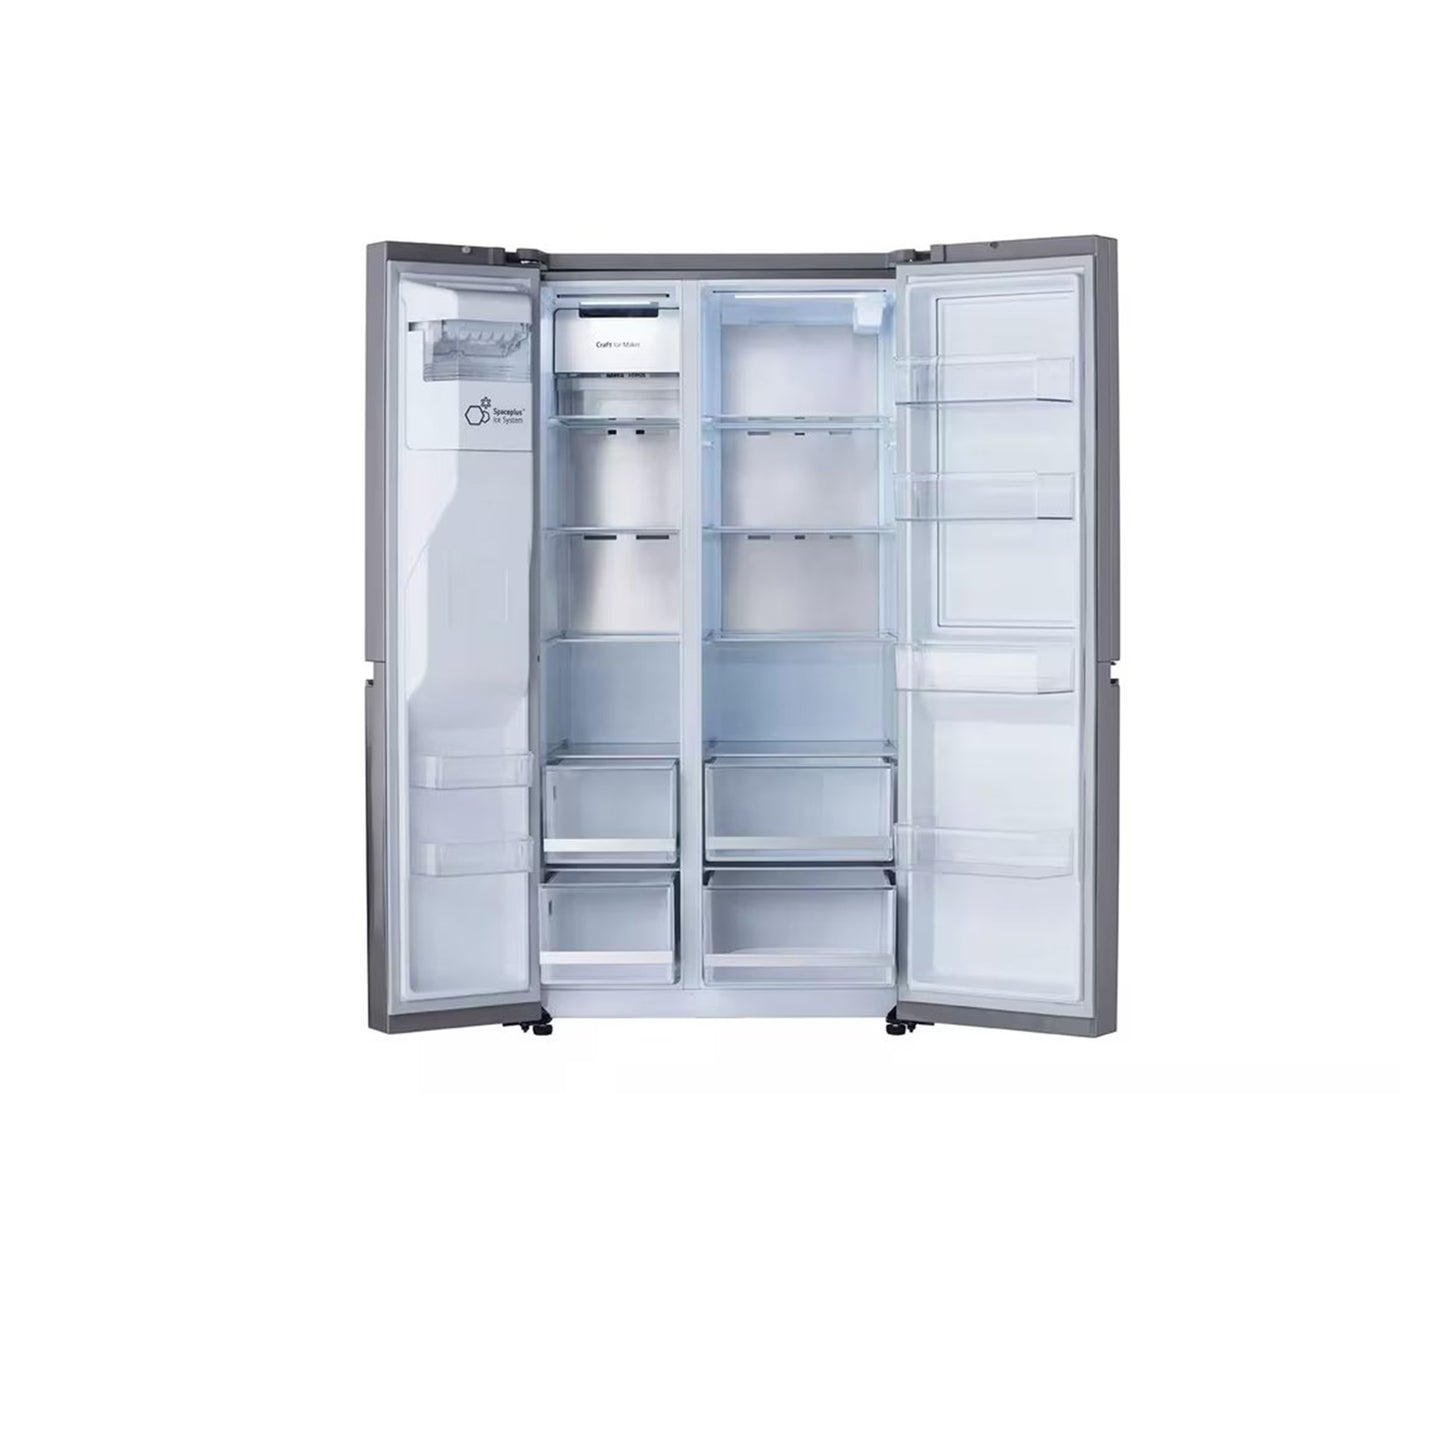 27 متر مكعب. قدم ثلاجة بباب داخلي® جنبًا إلى جنب مزودة بتقنية Craft Ice™ 